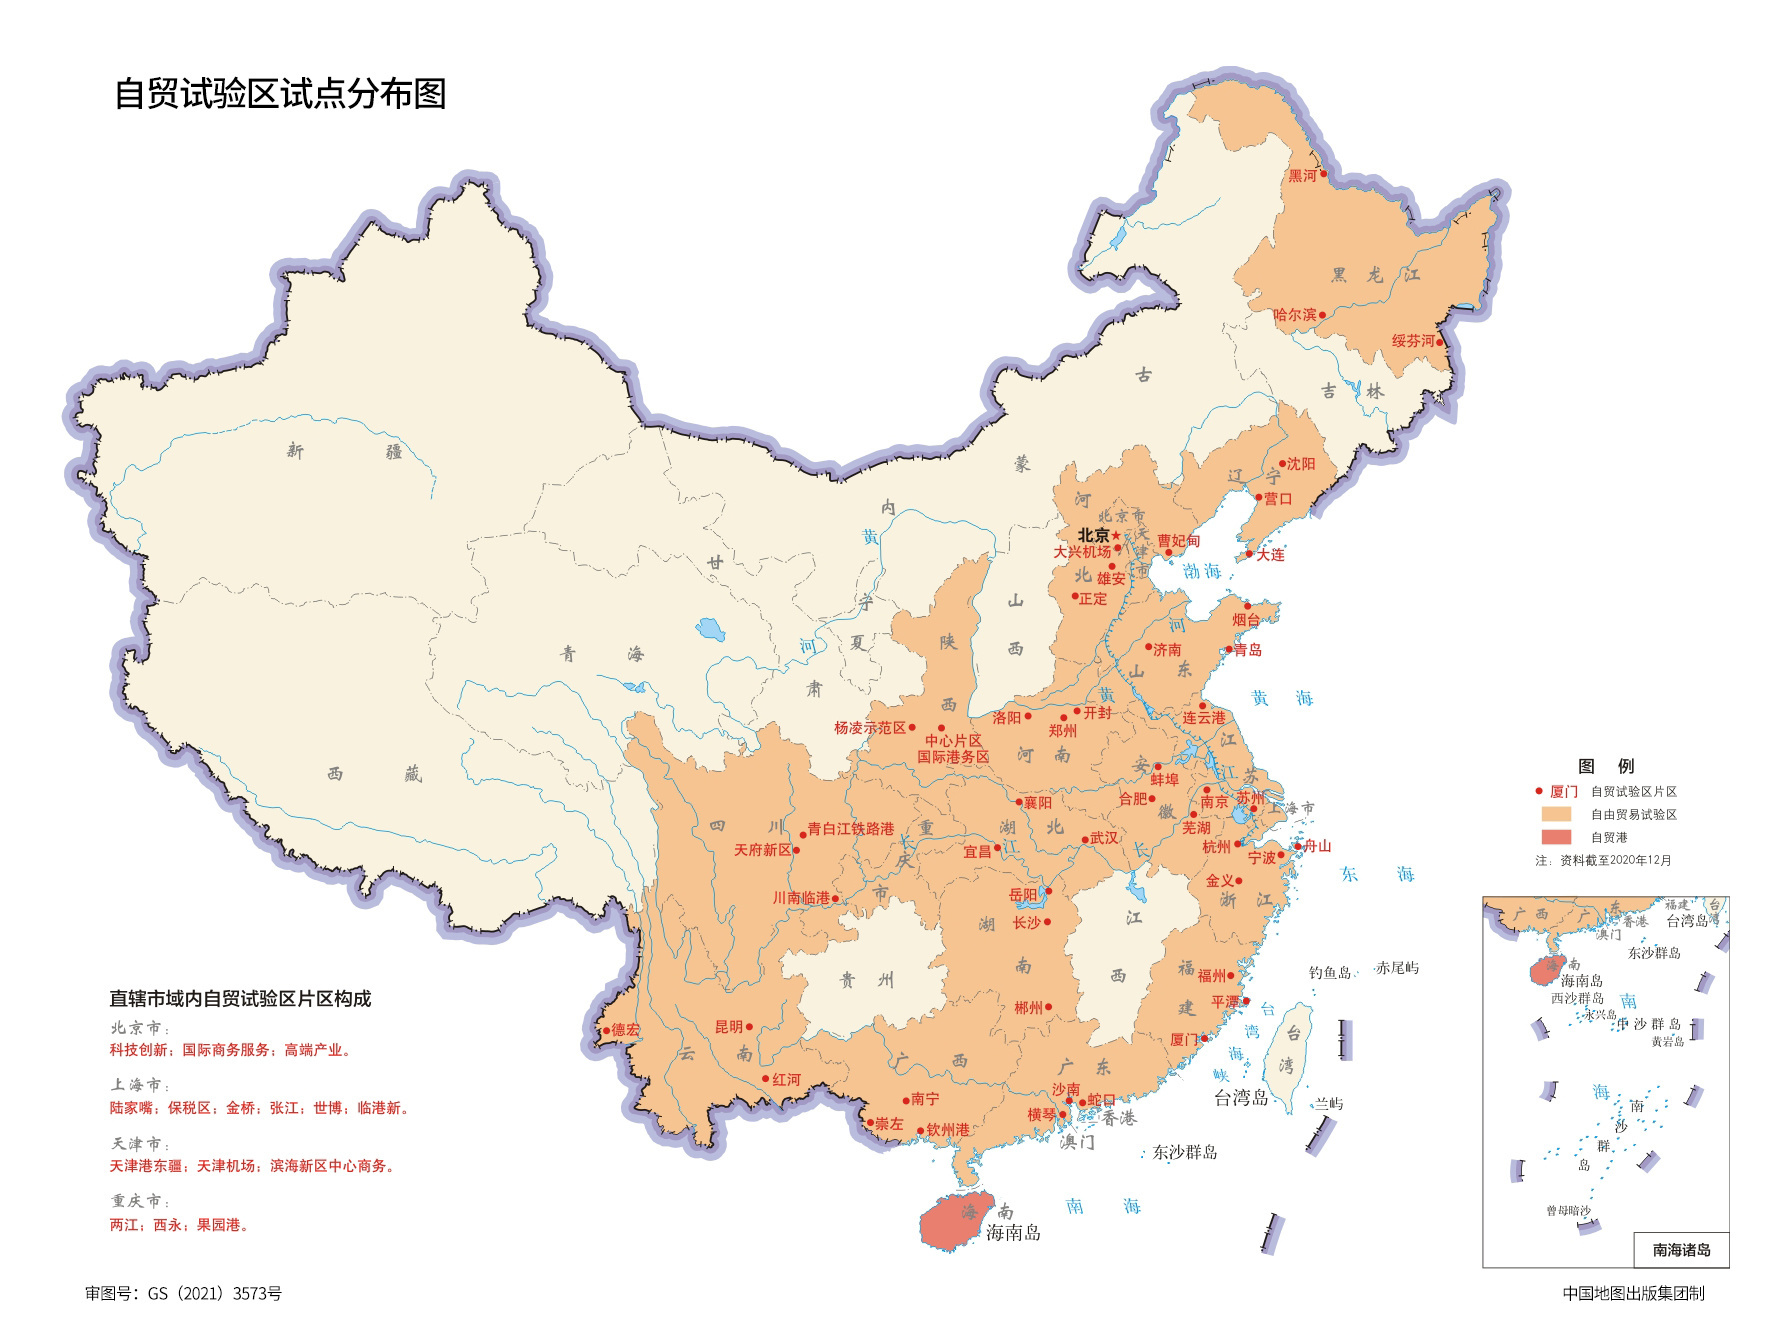 时间:2020年12月描述:2013年8月,国务院正式批准设立中国(上海)自由